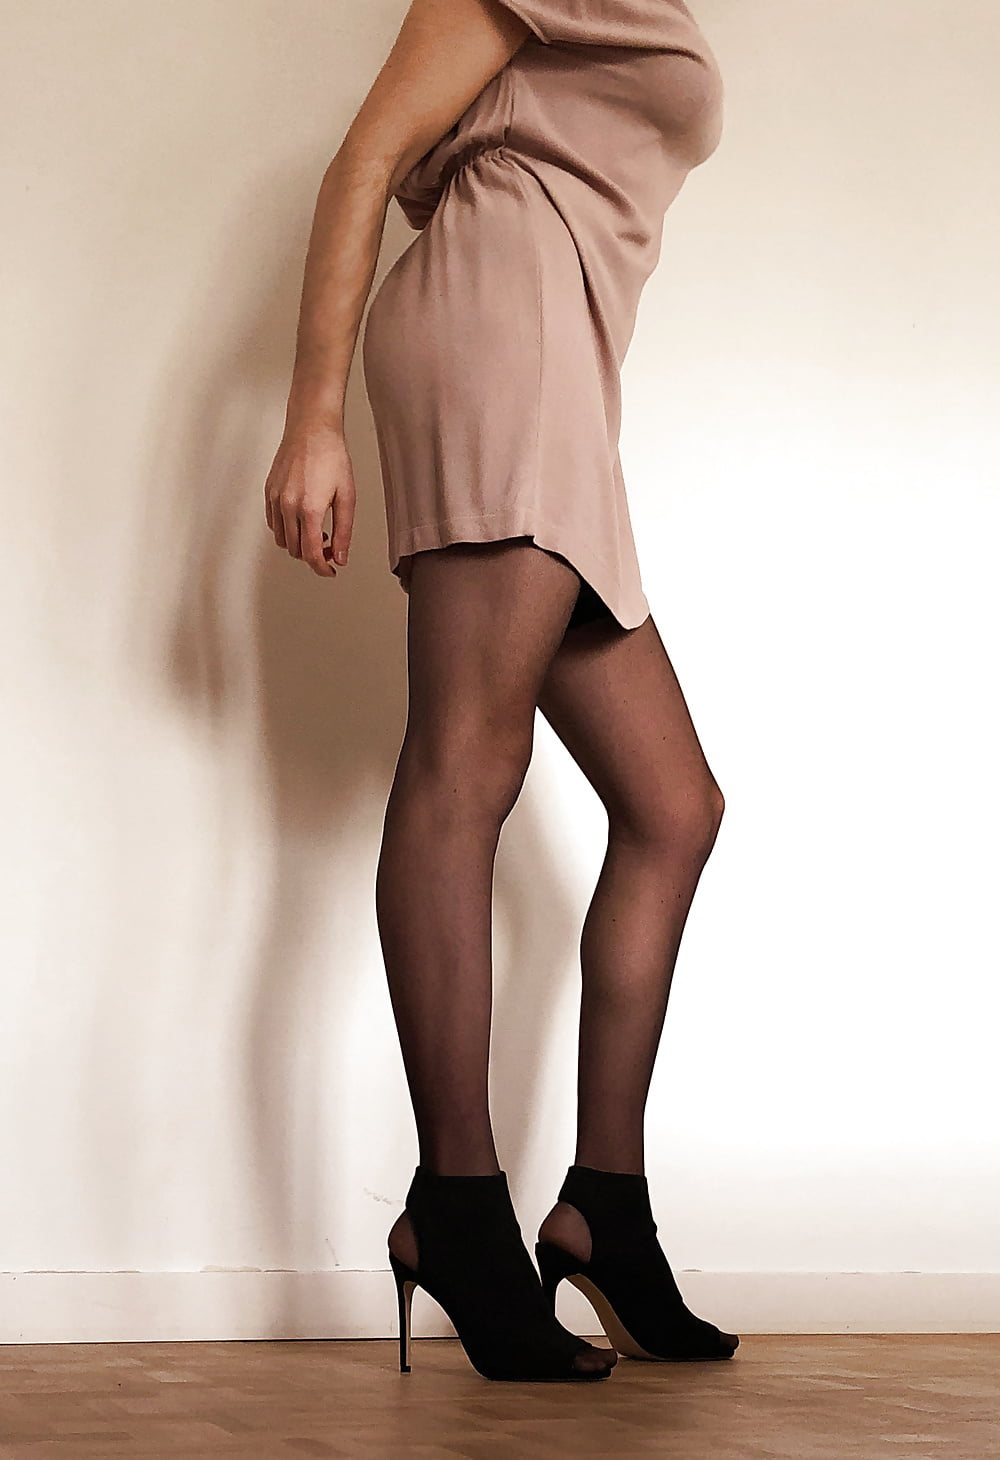 Pink dress stay up stockings upskirt #107135104